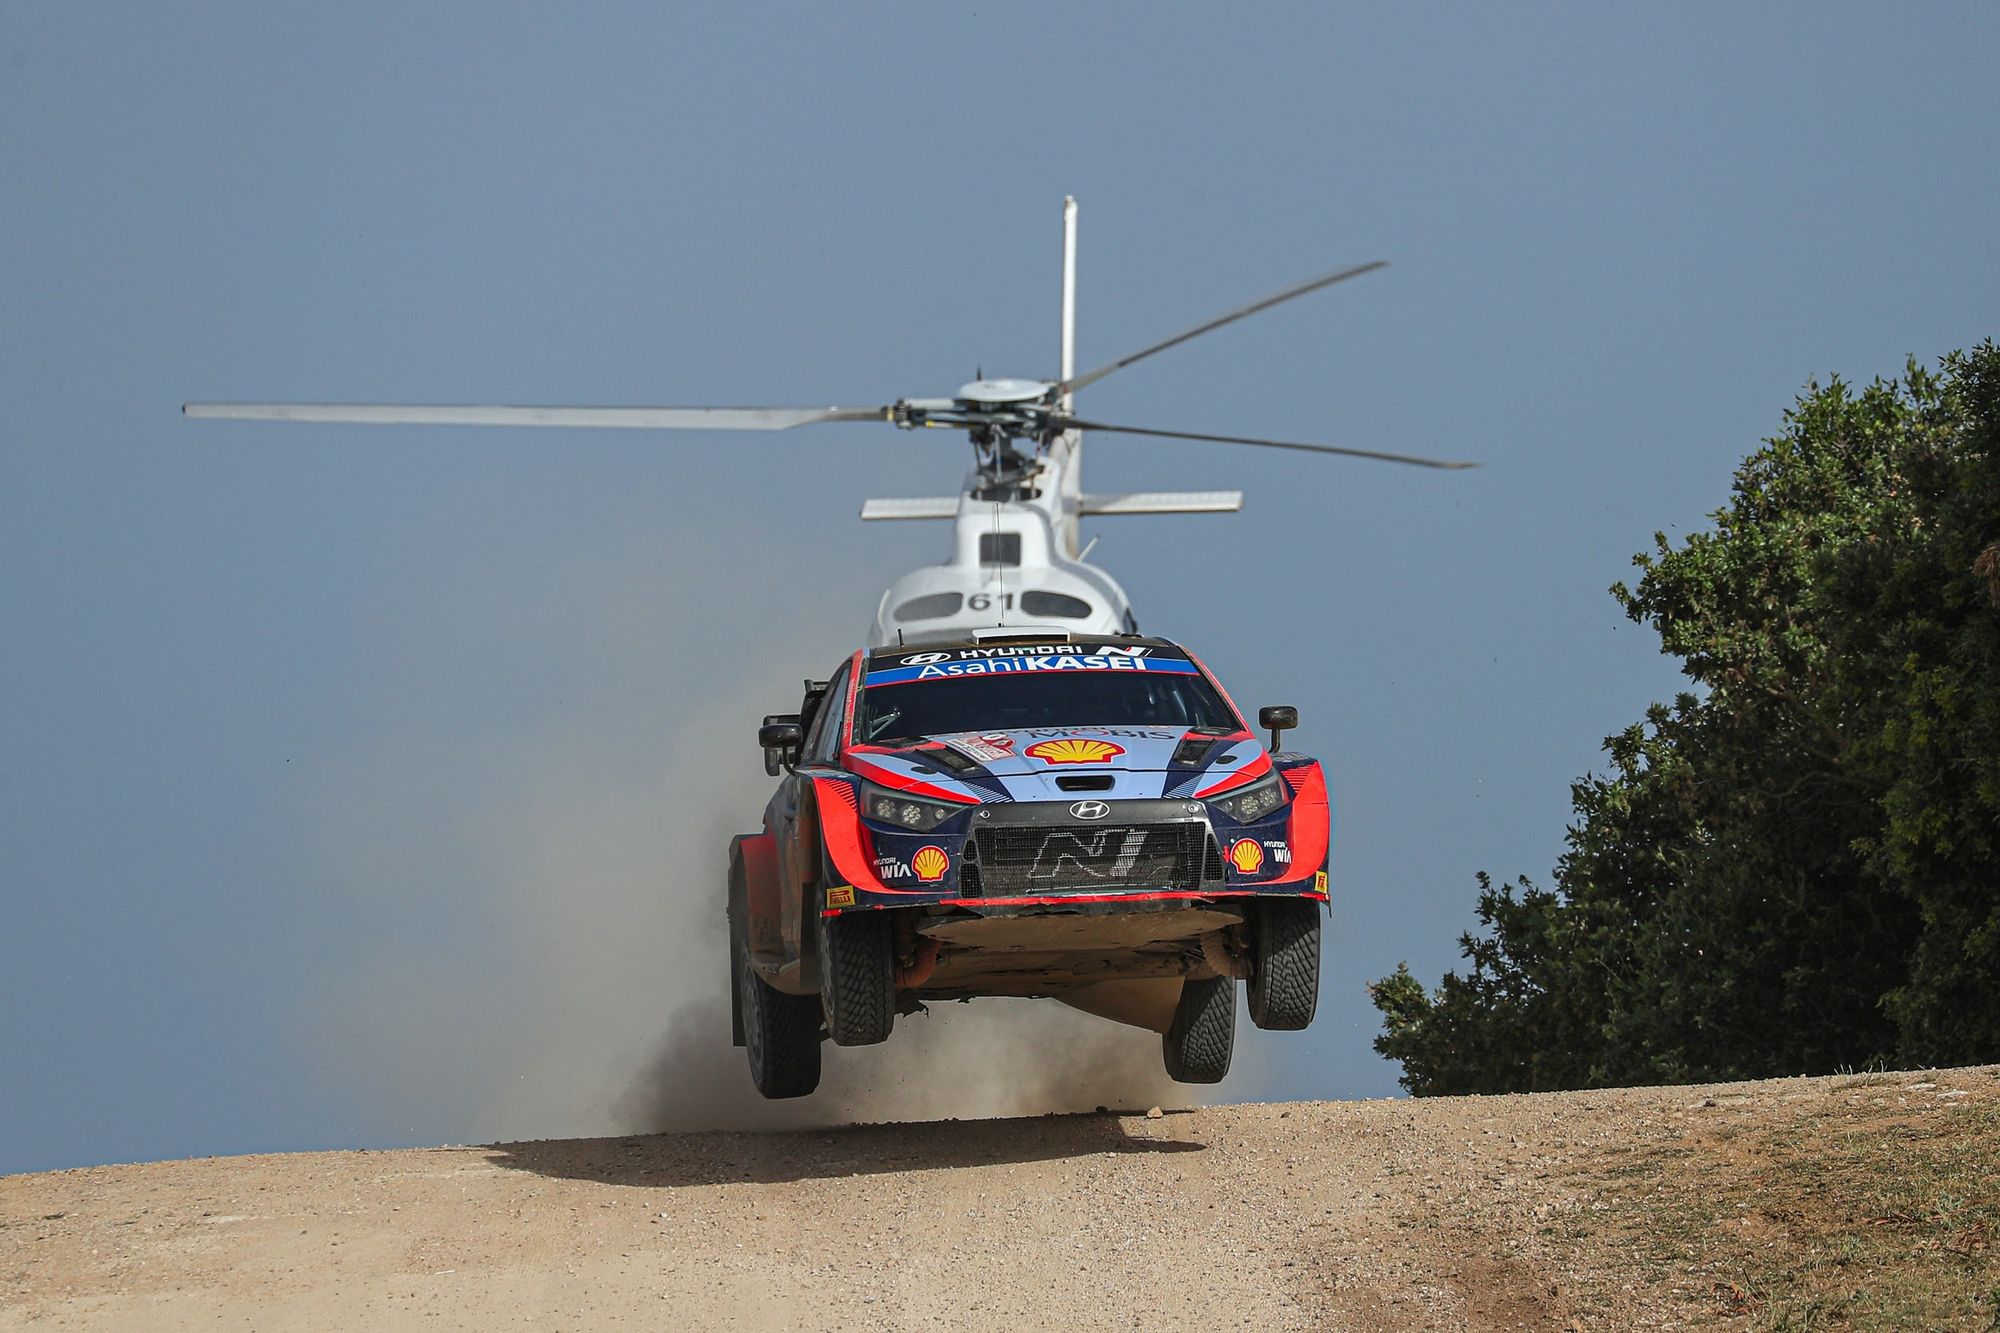 Rally Italia Sardegna, pronta la 20^ edizione. Dal 1° al 4 giugno i campioni del WRC si sfideranno sull'isola dei quattro mori